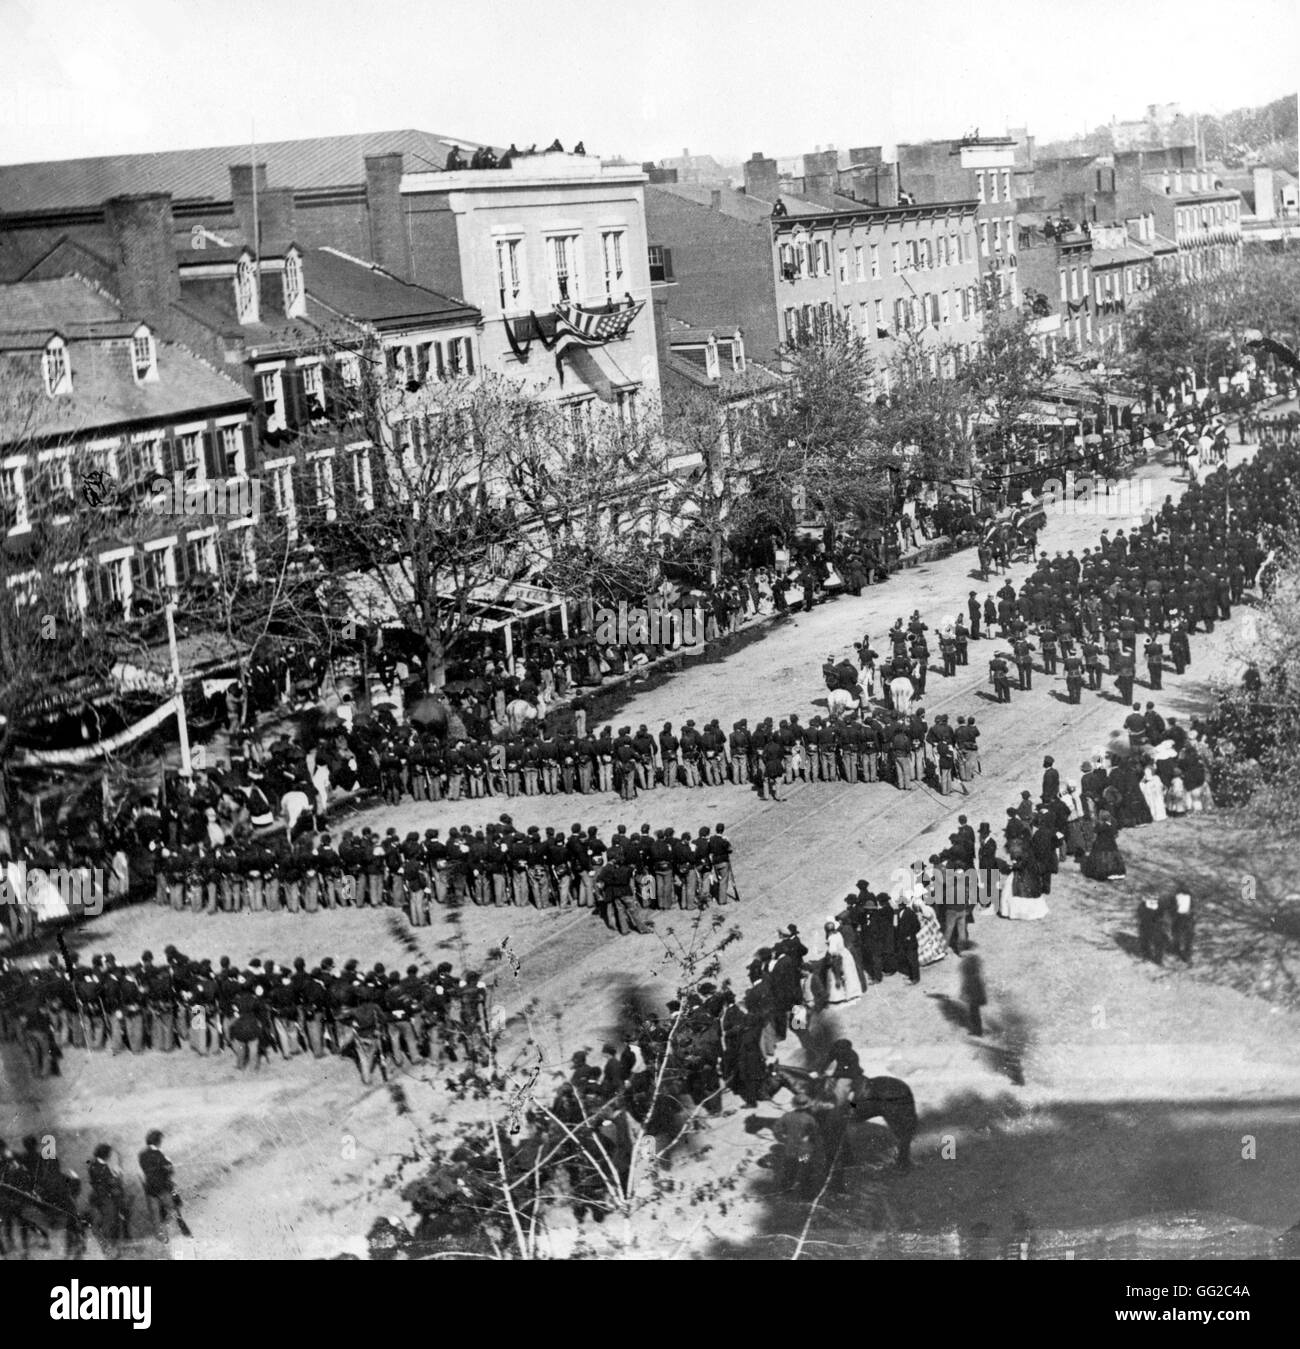 Foto von Alexander Gardner. Beerdigungen von Abraham Lincoln an der Pennsylvania Avenue. 1865 Vereinigte Staaten Washington. Librairy des Kongresses Stockfoto